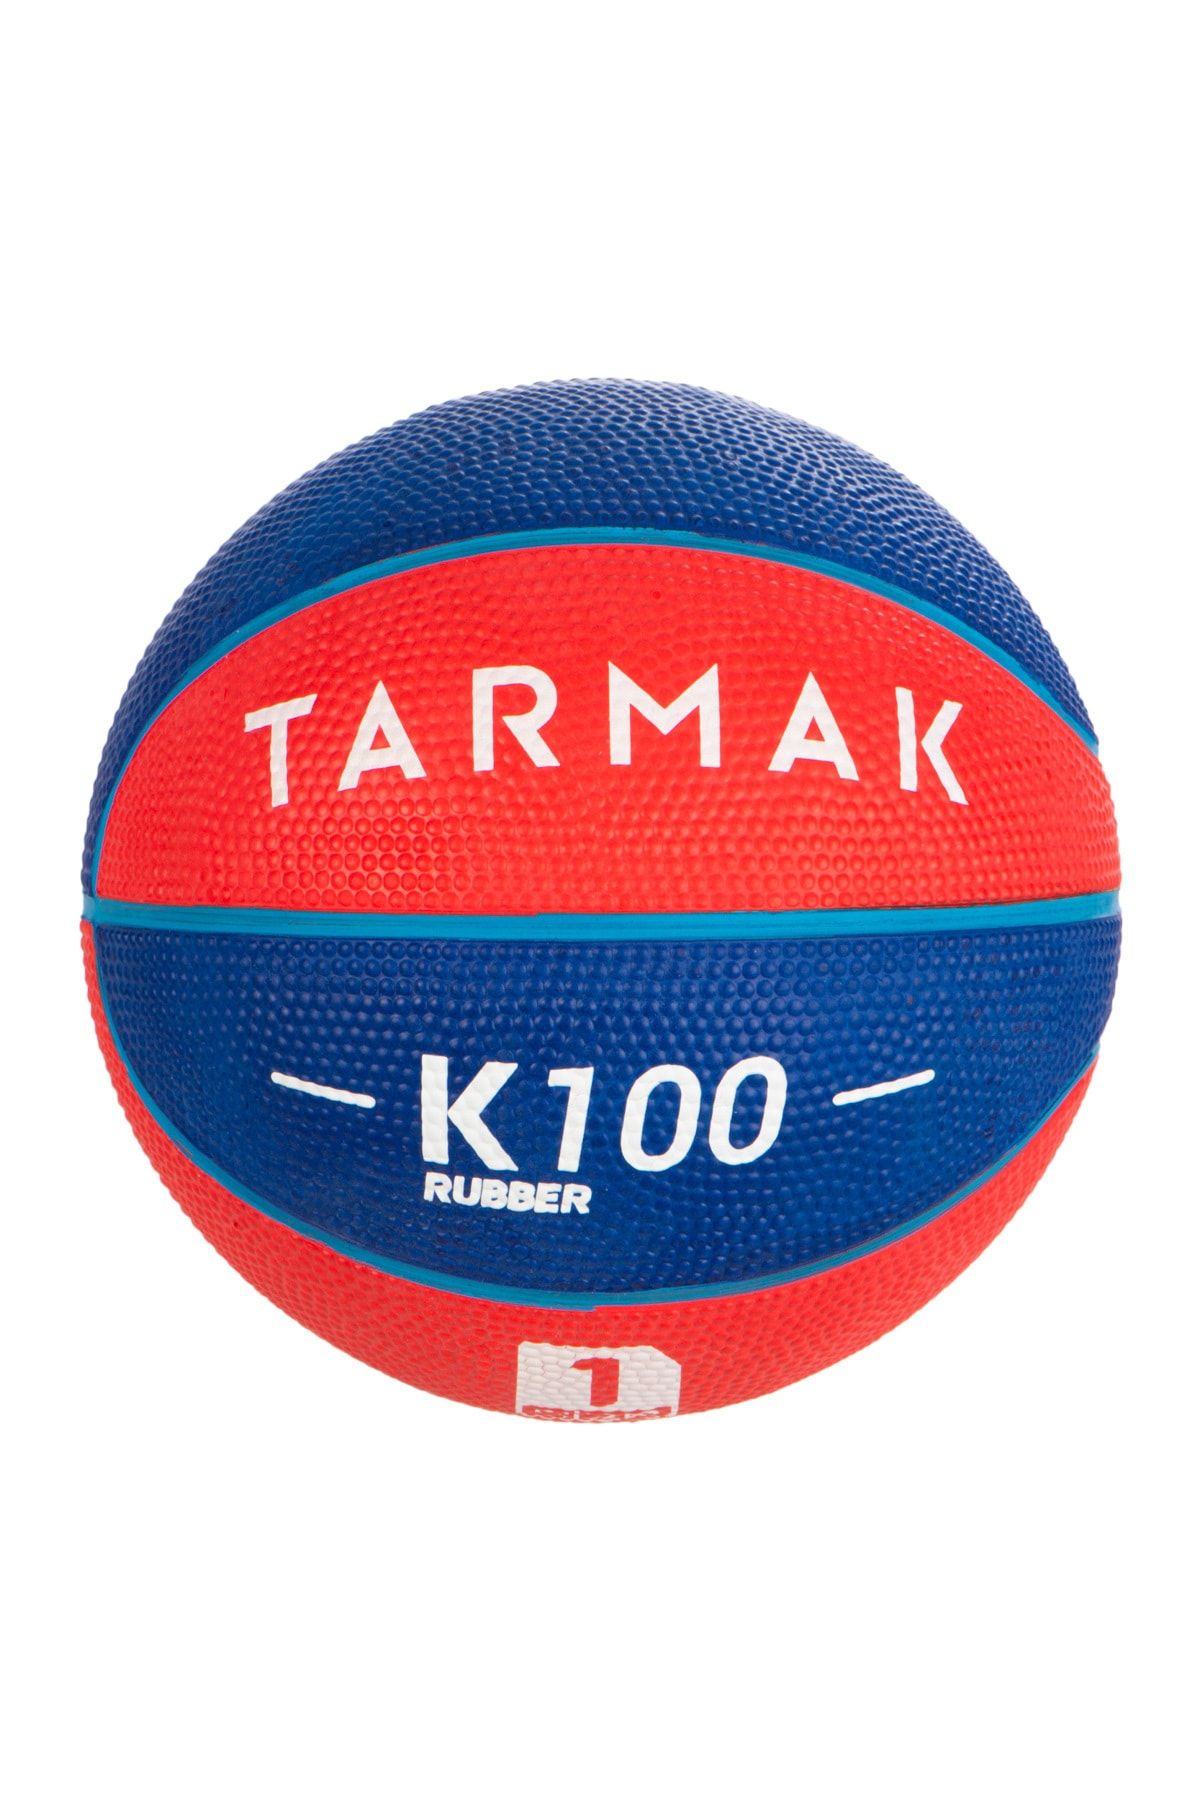 Decathlon Tarmak Mini Basketbol Topu - 1 Numara - Mavi / Kırmızı - K100